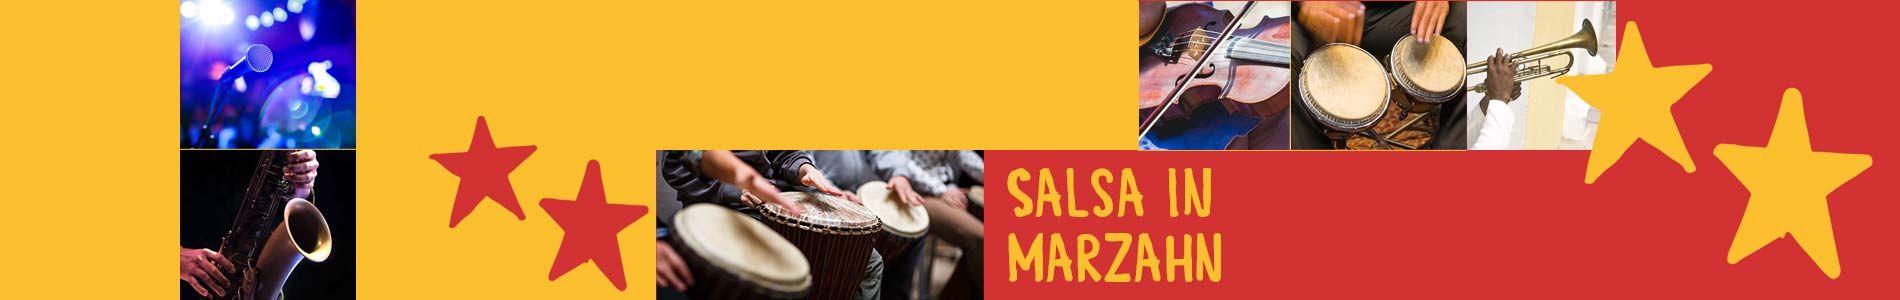 Salsa in Marzahn – Salsa lernen und tanzen, Tanzkurse, Partys, Veranstaltungen